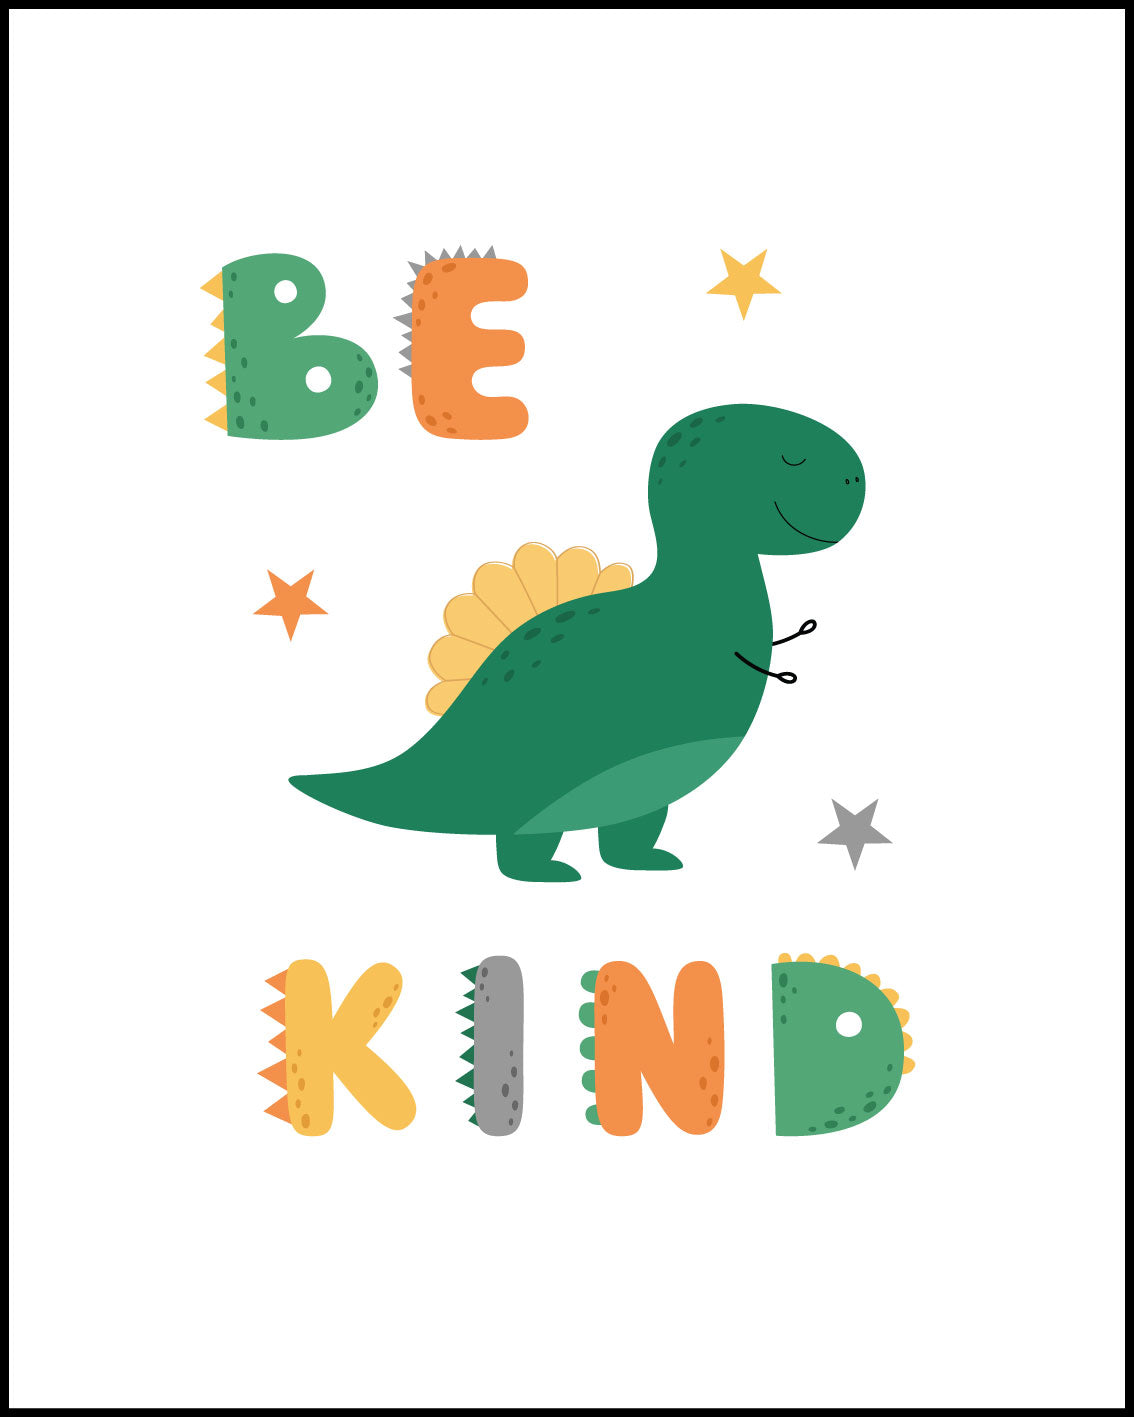 Dino roar, Be kind, Dream big, set of 3 nursery Posters